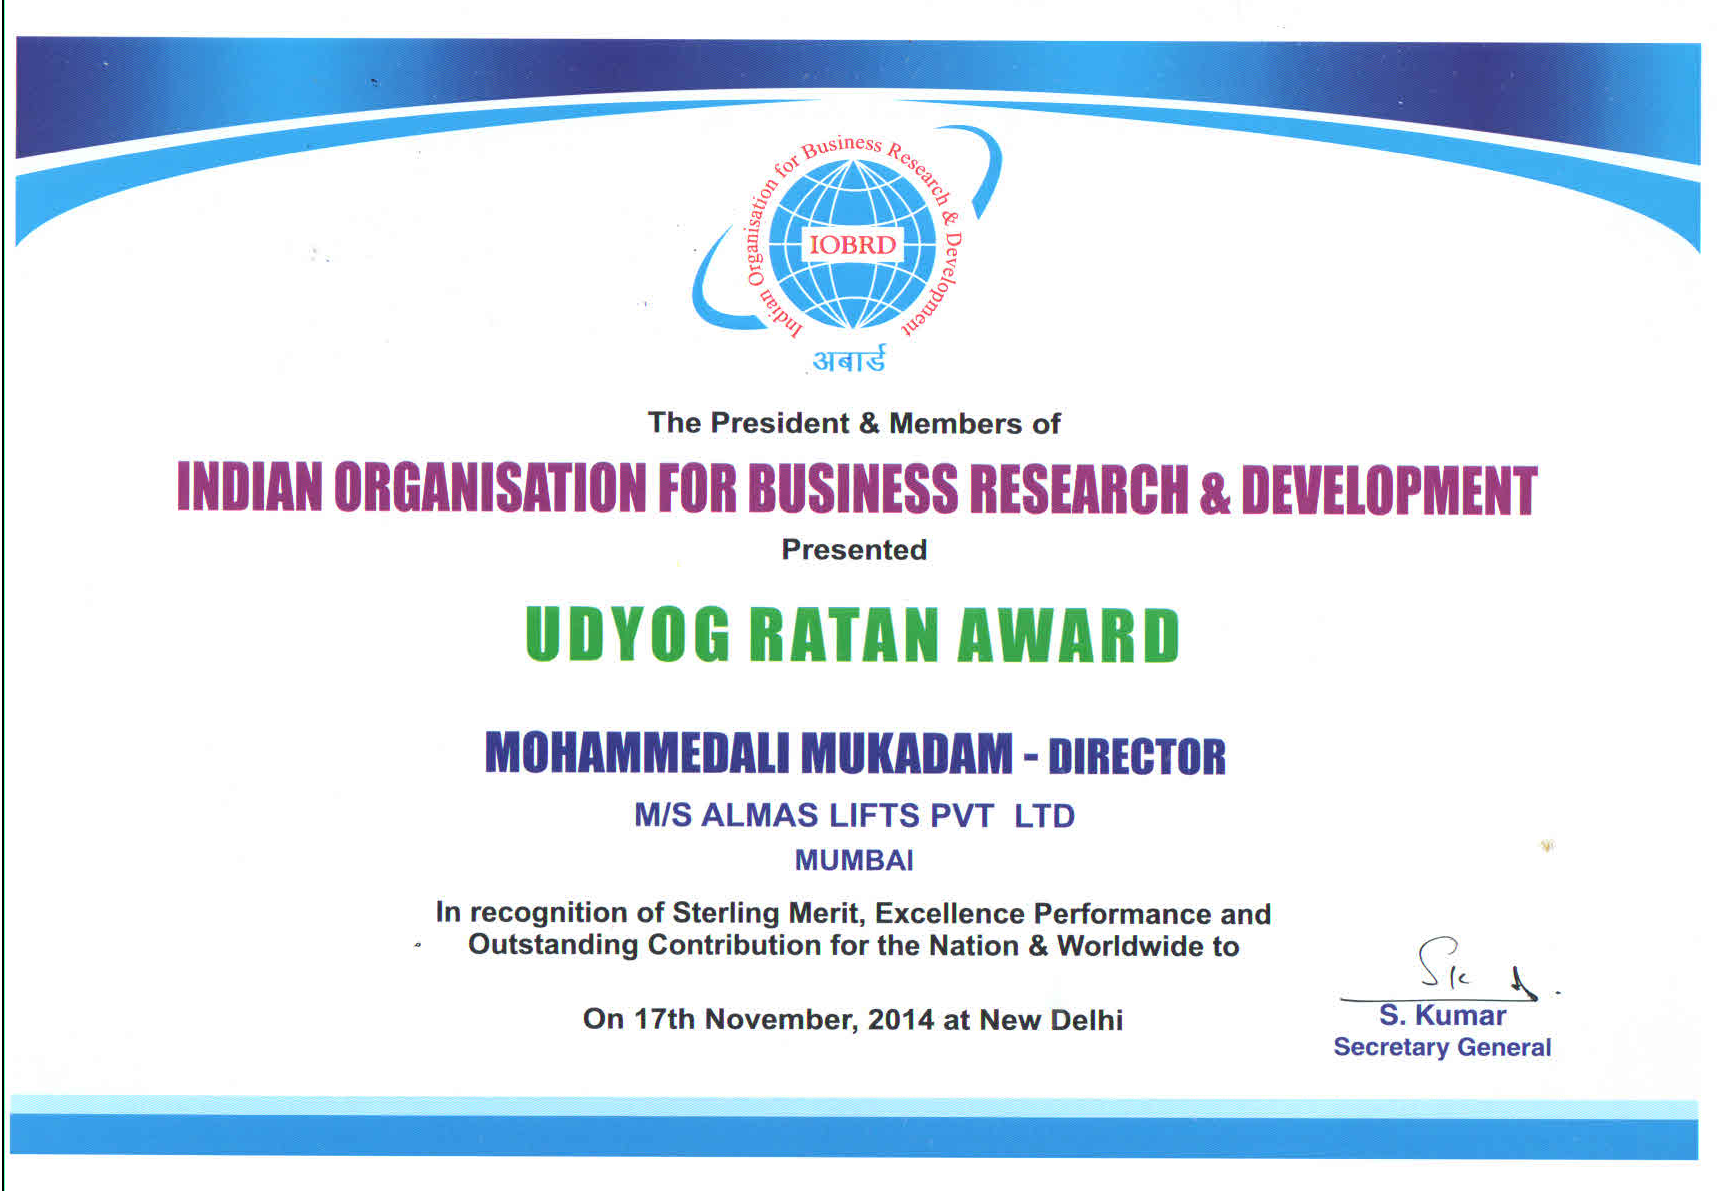 Udyog Ratan Award